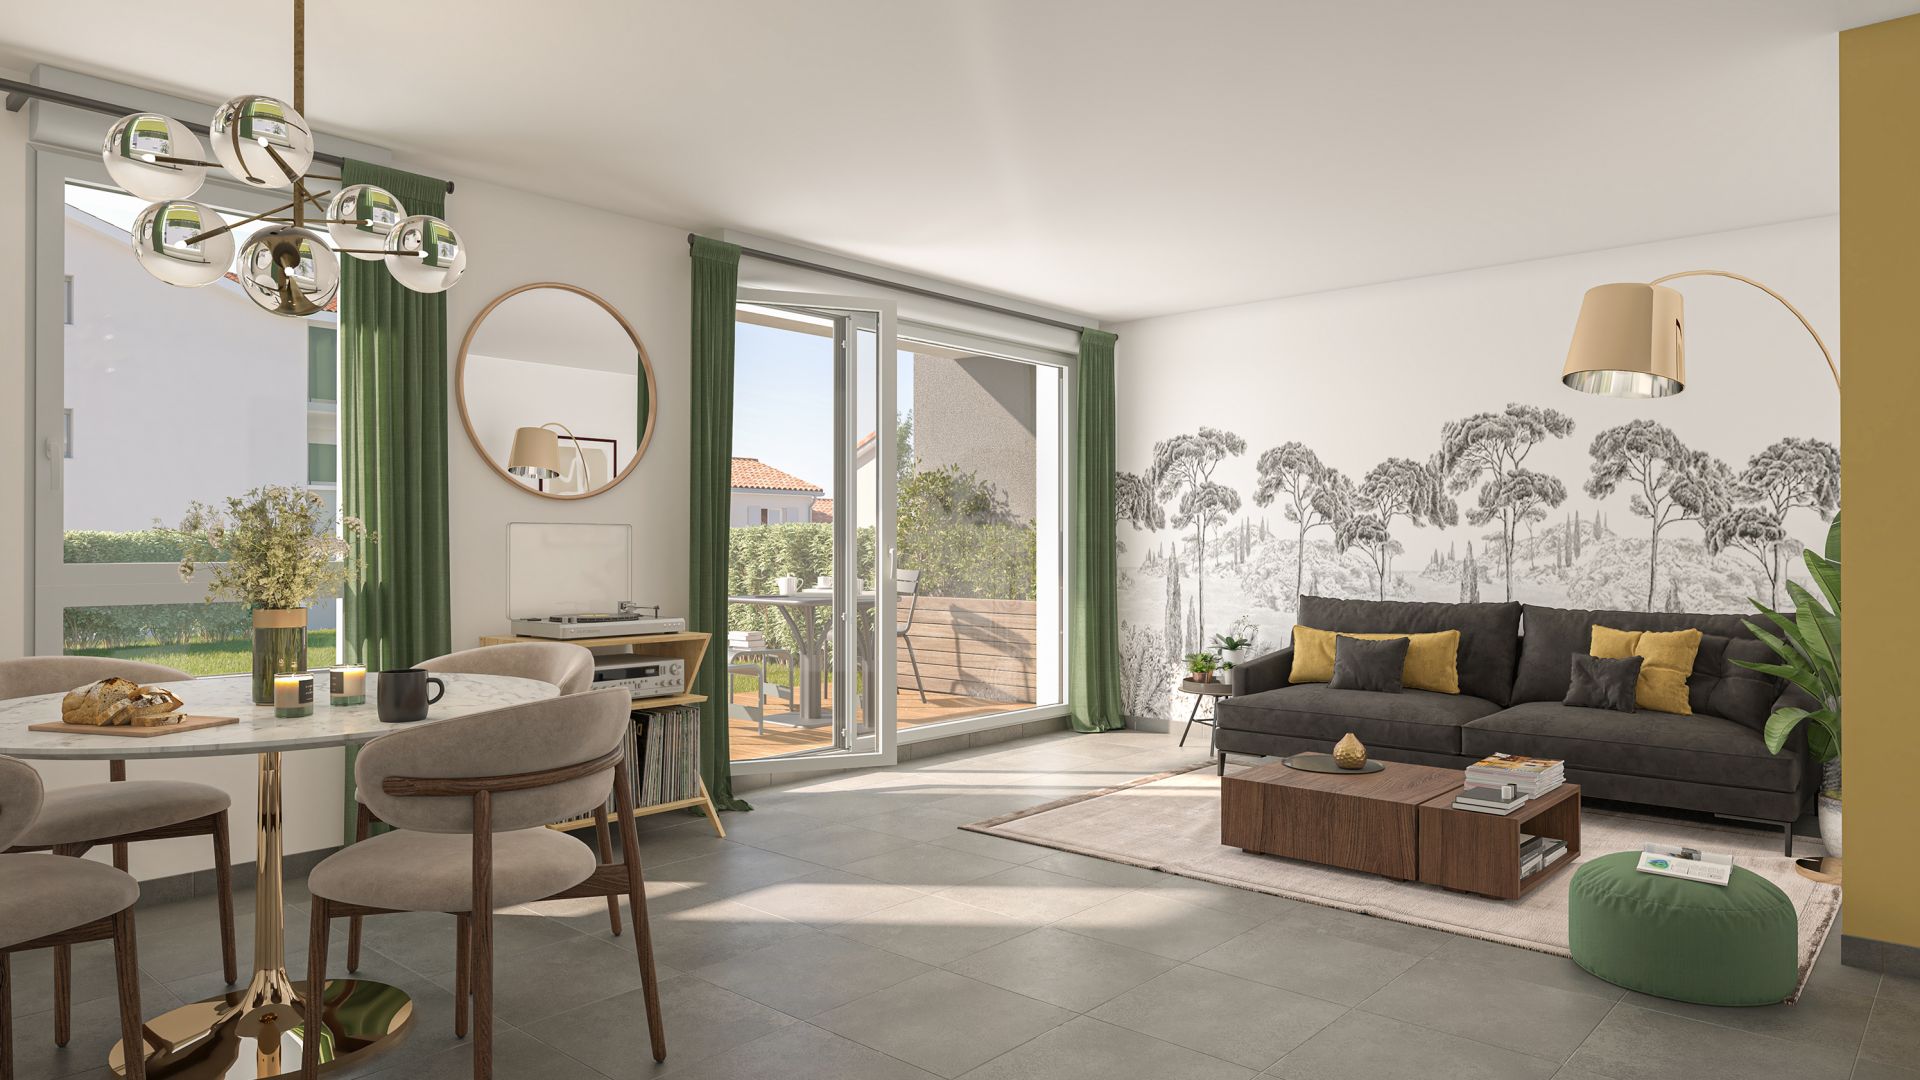 Greencity immobilier - achat appartements neufs du T2 au T3 - Résidence Le Candice - BRUGUIÈRES 31150